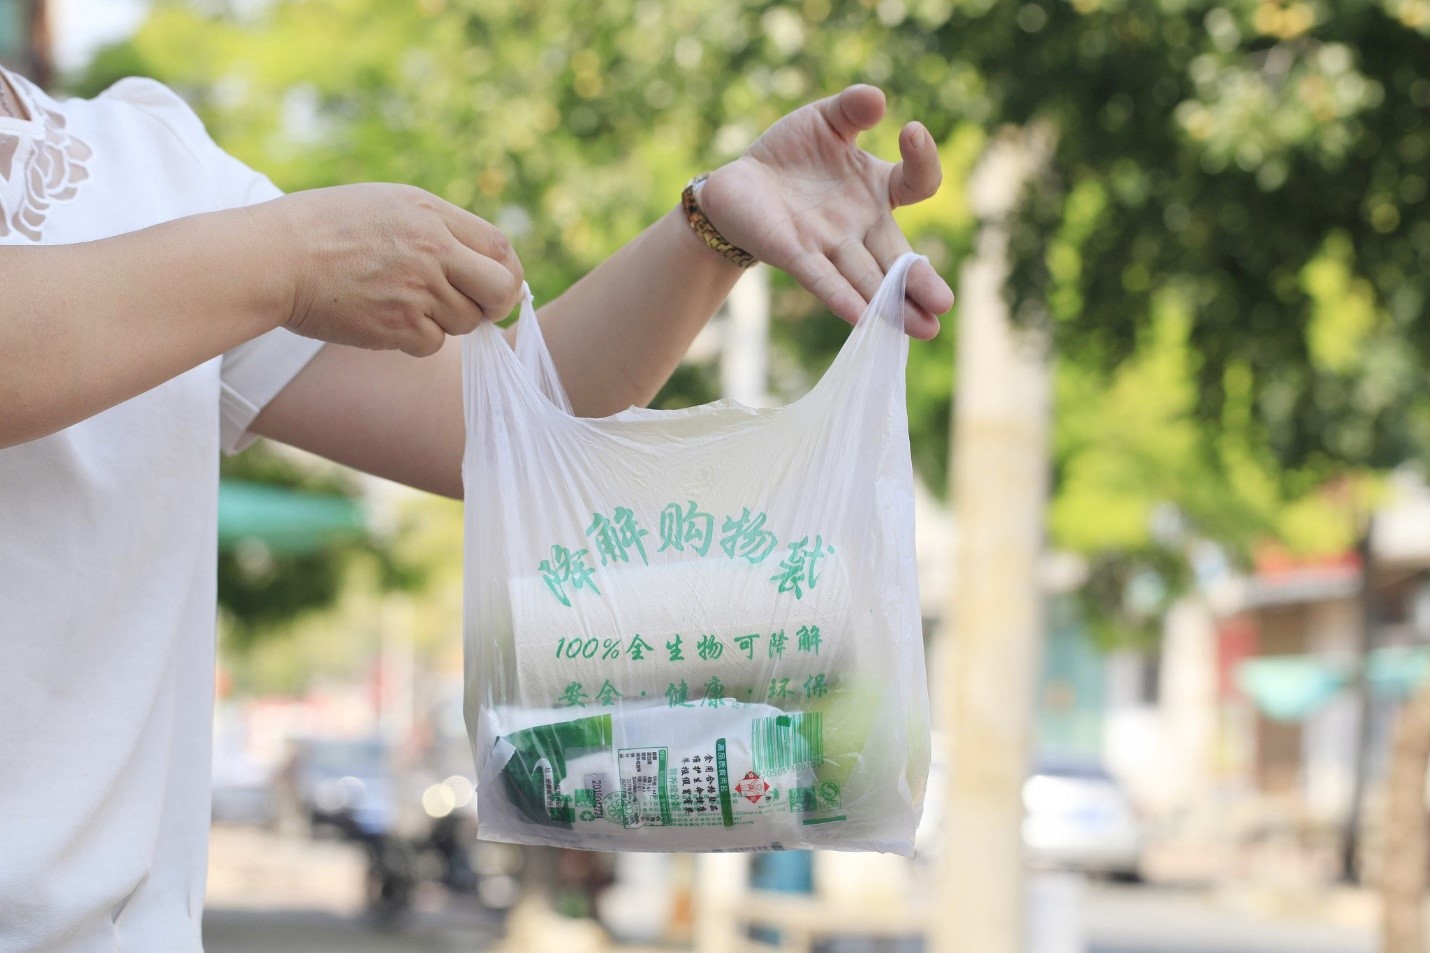 Một chiếc túi sinh học có khả năng phân hủy được sử dụng để mua sắm